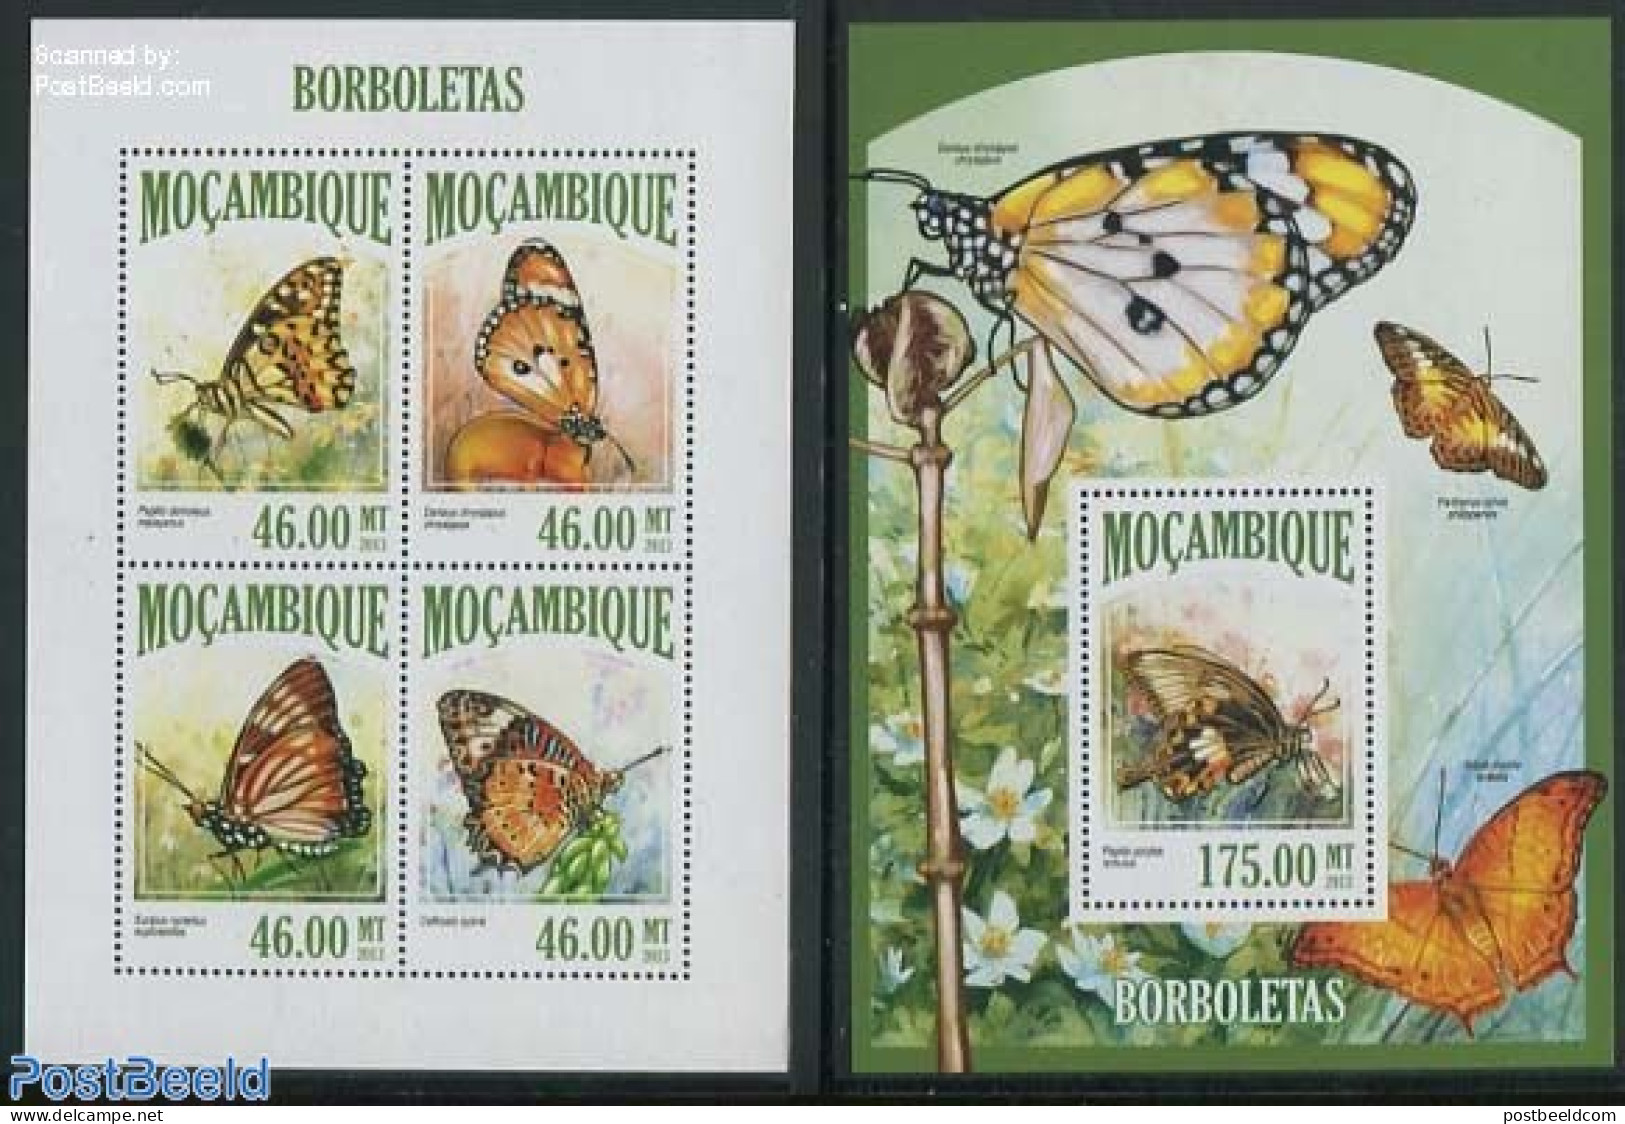 Mozambique 2013 Butterflies 2 S/s, Mint NH, Nature - Butterflies - Mozambique